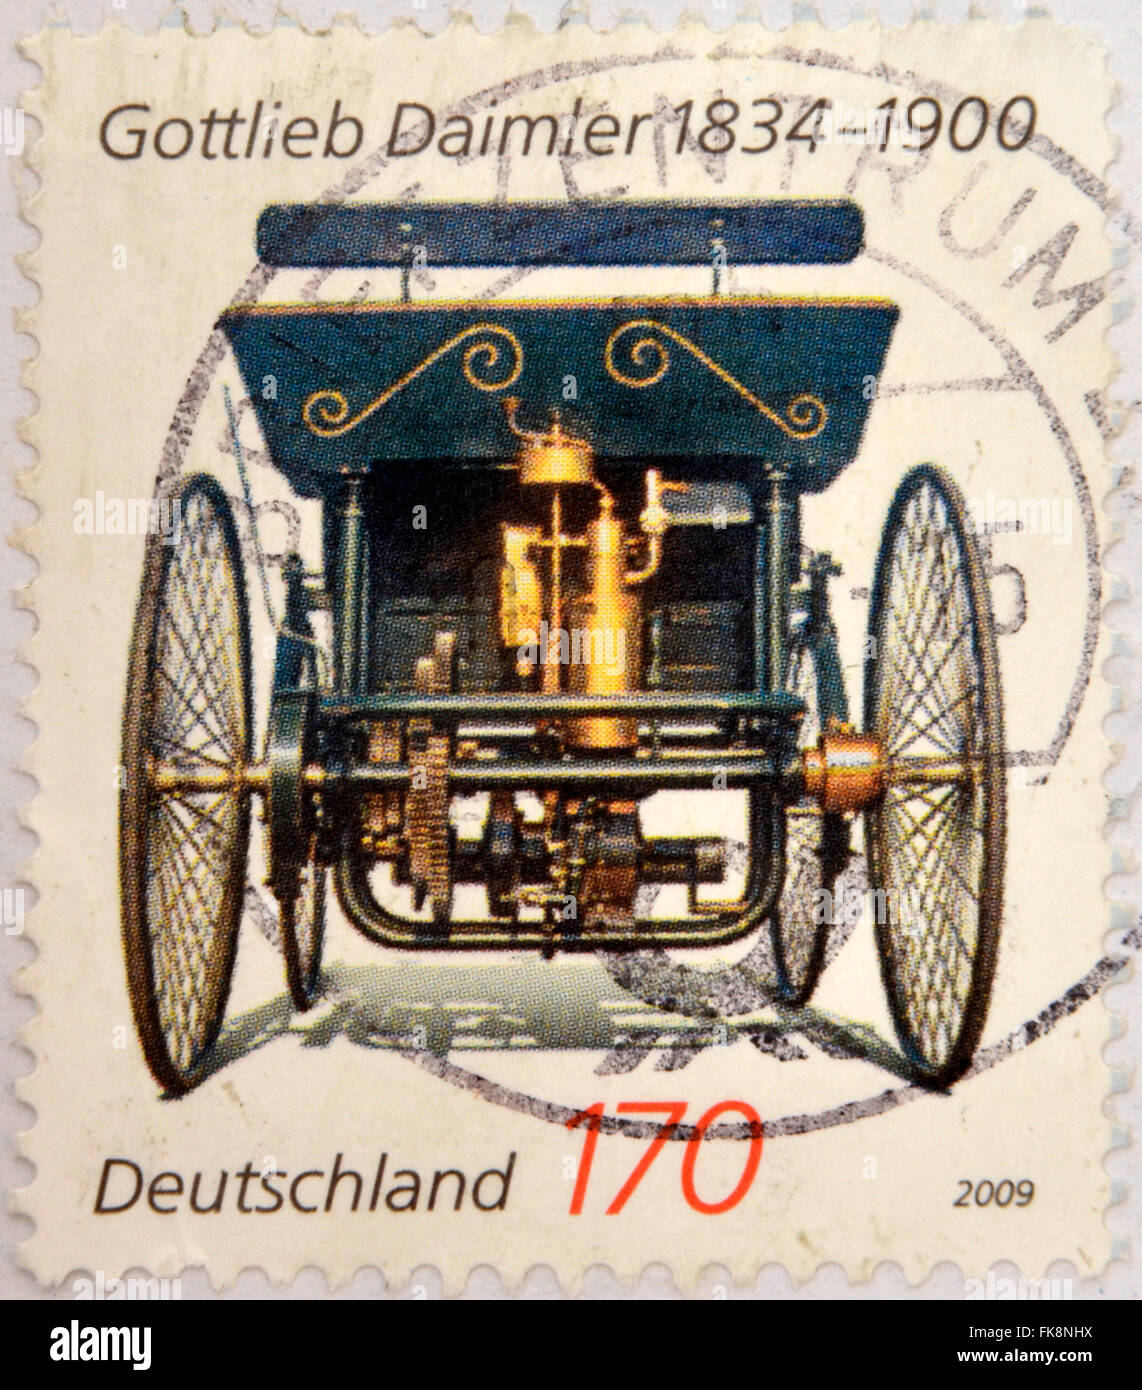 Allemagne - circa 2009 : timbres en Allemagne montre Gottlieb Daimler, vieille voiture, vers 2009 Banque D'Images